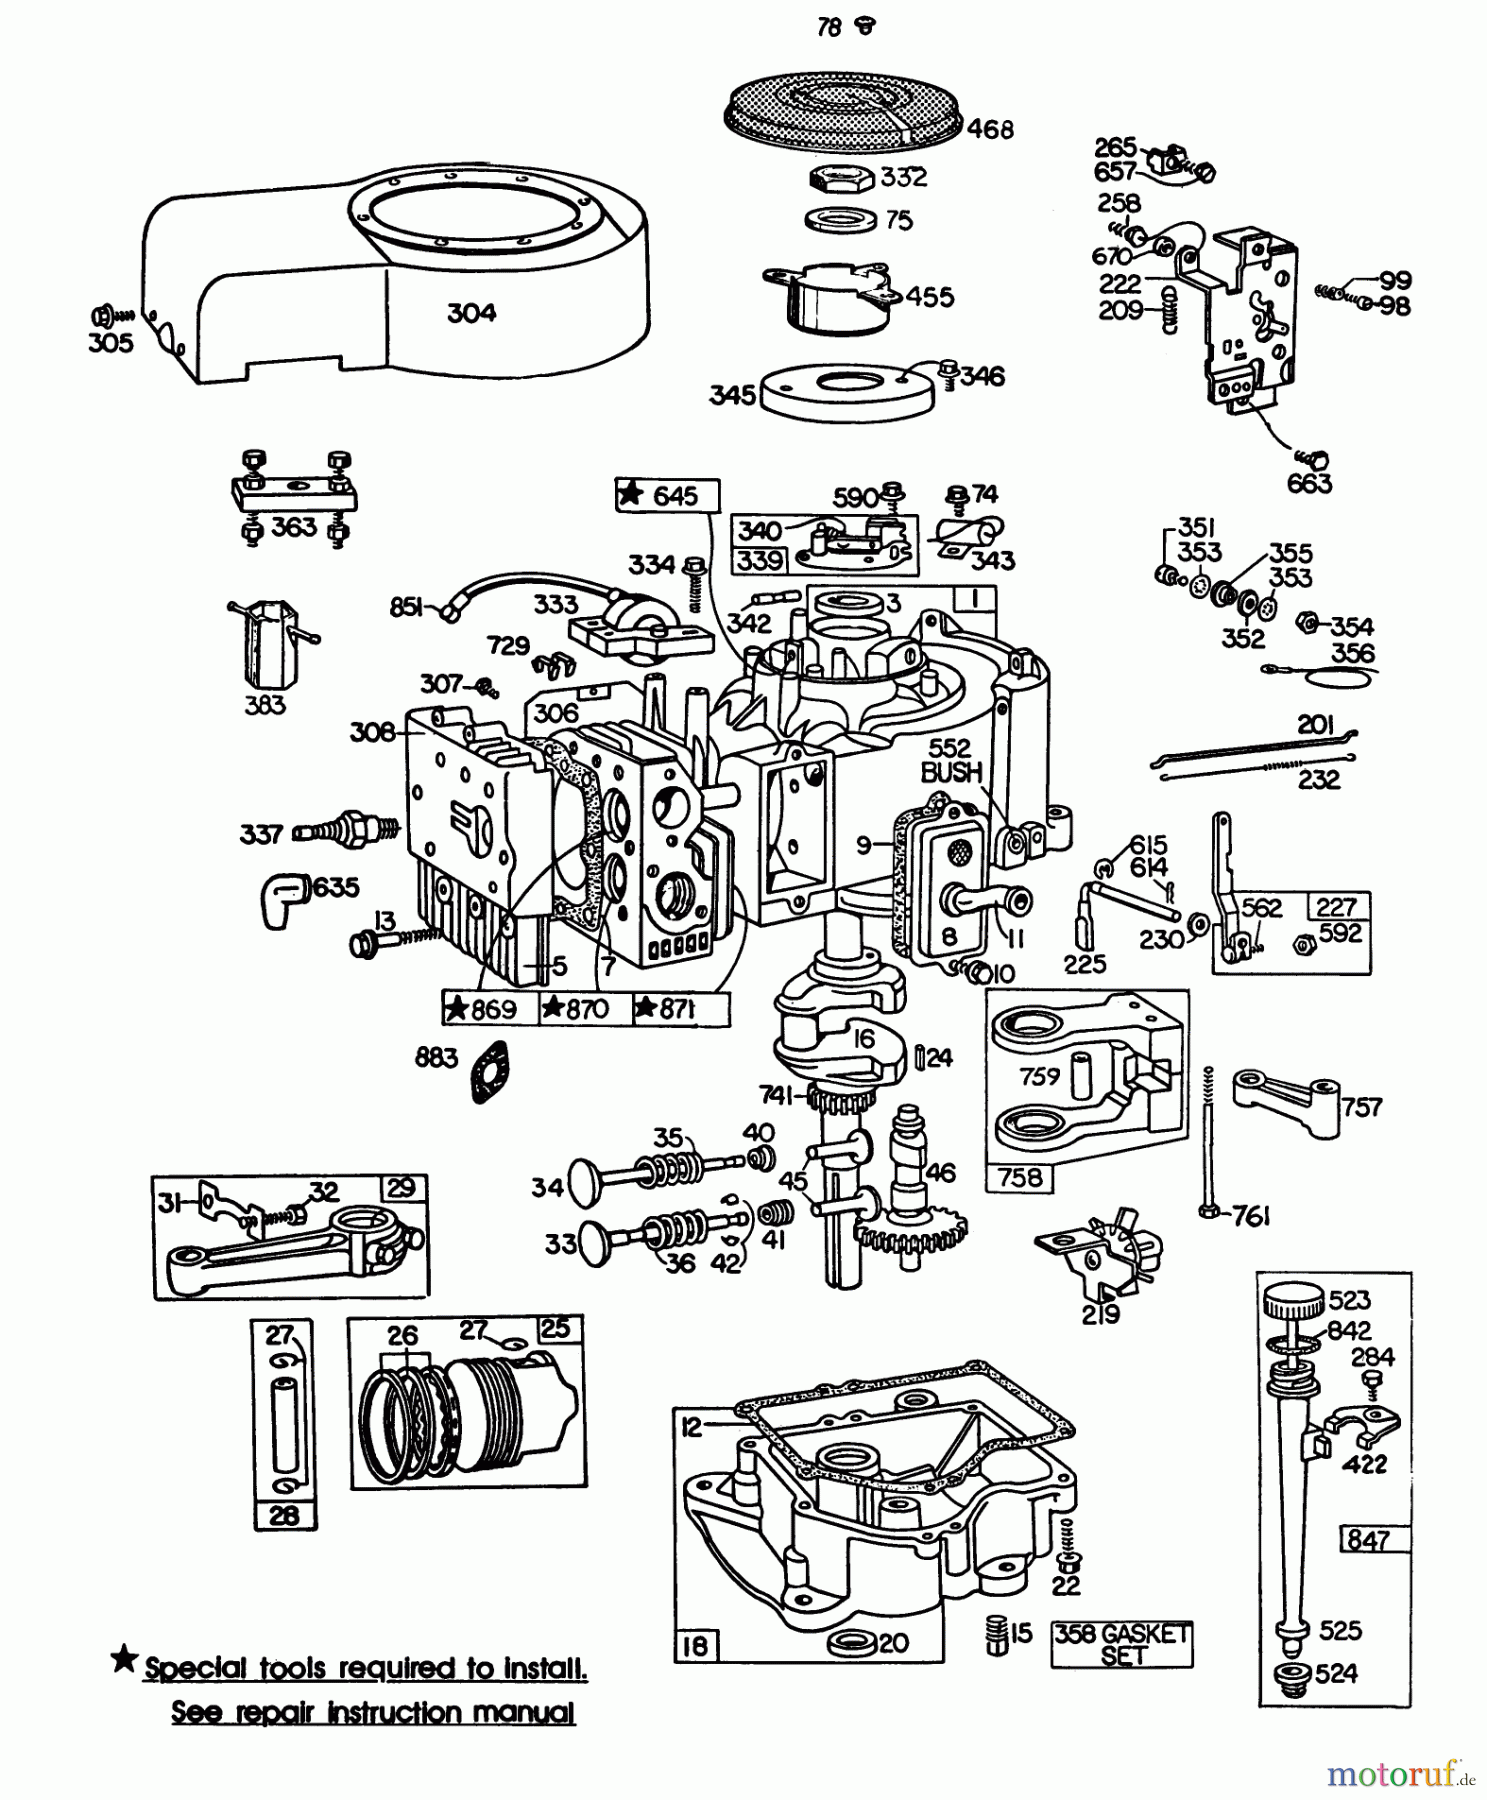  Toro Neu Mowers, Lawn & Garden Tractor Seite 1 57300 (8-32) - Toro 8-32 Front Engine Rider, 1982 (2000001-2999999) ENGINE BRIGGS & STRATTON MODEL 252707-0230-01 (MODEL 57360) #2